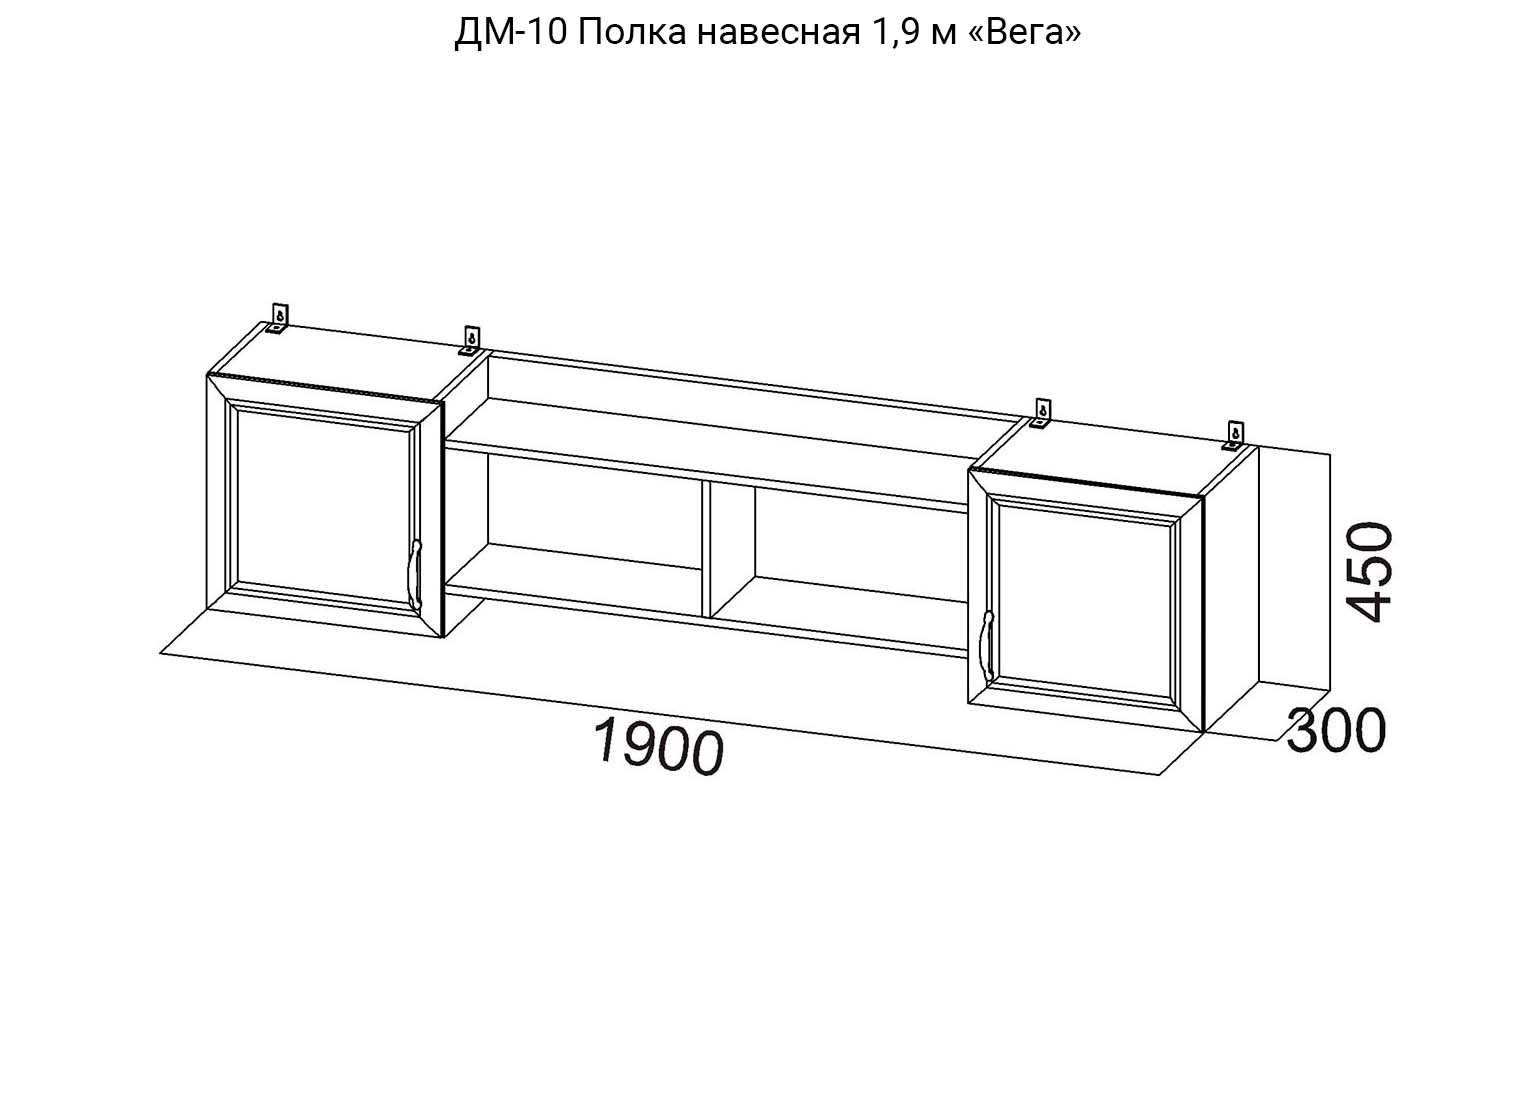 Детская Вега ДМ-10 Полка навесная 1,9м схема SV-Мебель